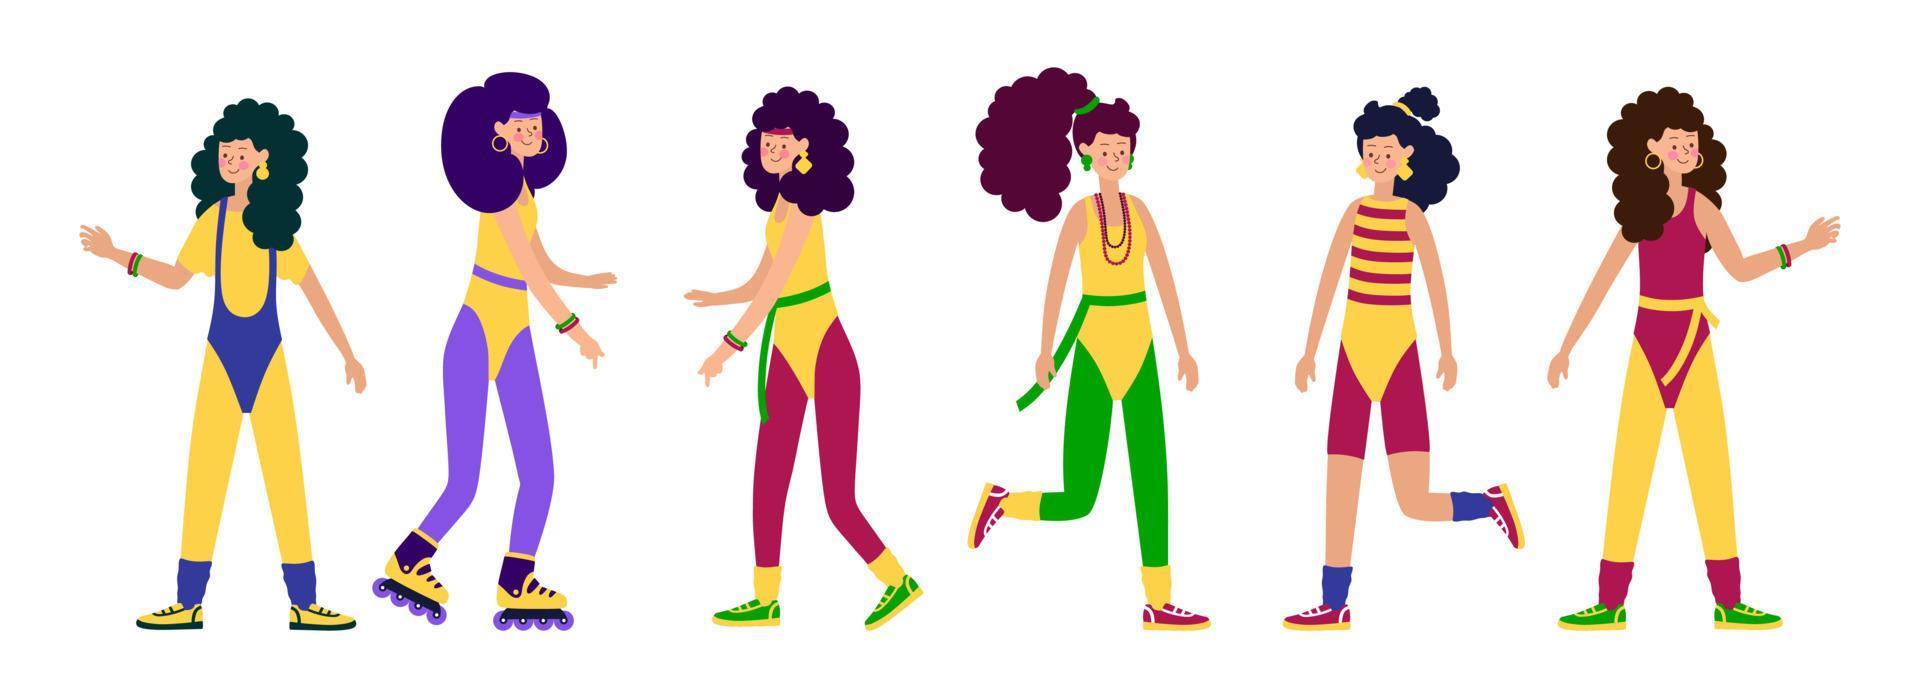 gelukkige jonge personages meisjes in modieuze kleding leggings en zwemkleding en kapsels van de jaren 80-90 stijlvol retro vrouwenfeest. vectorillustratie van cartoon mensen vector